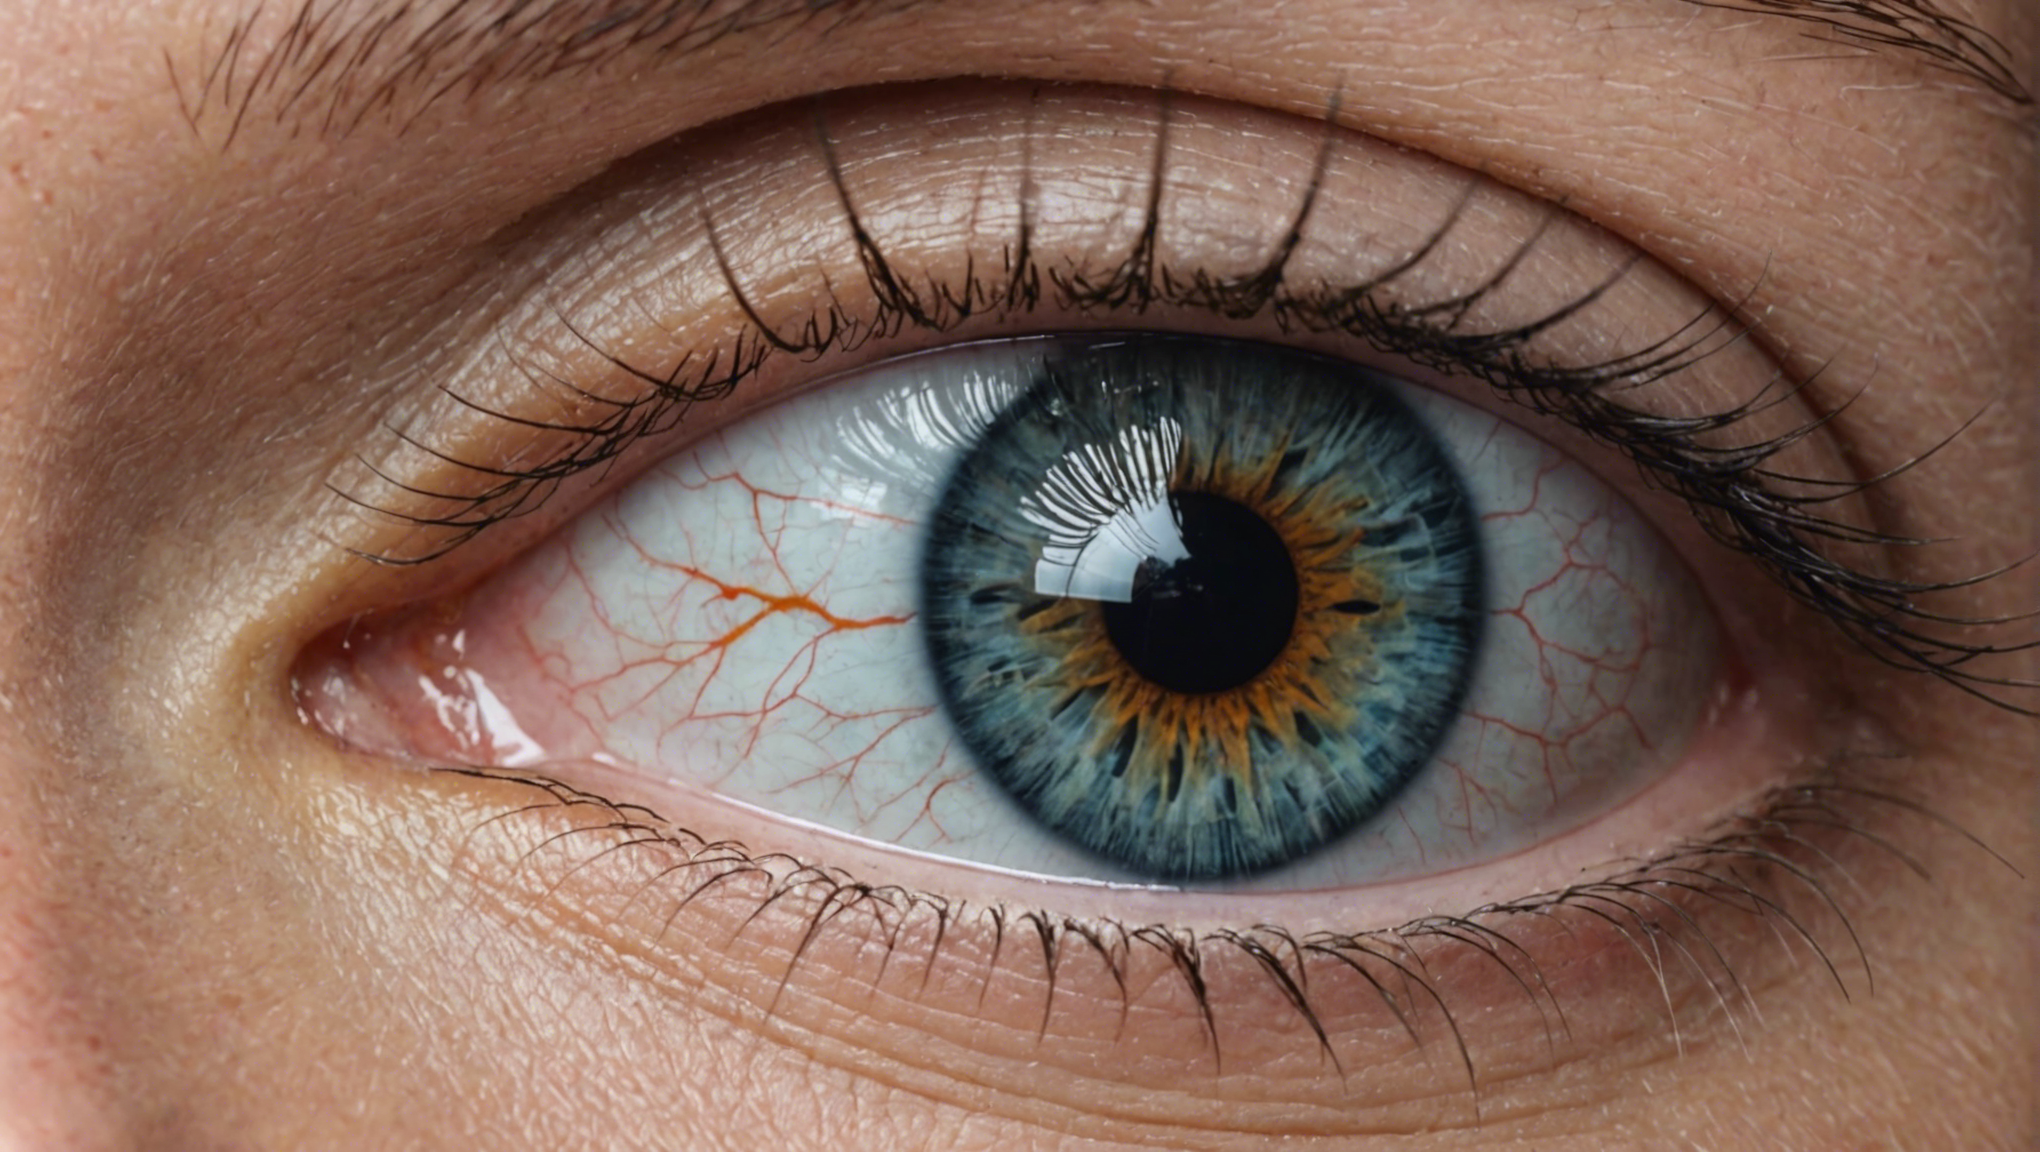 découvrez comment le suivi médical et les ajustements des yeux peuvent améliorer votre vision et votre santé ophtalmologique.